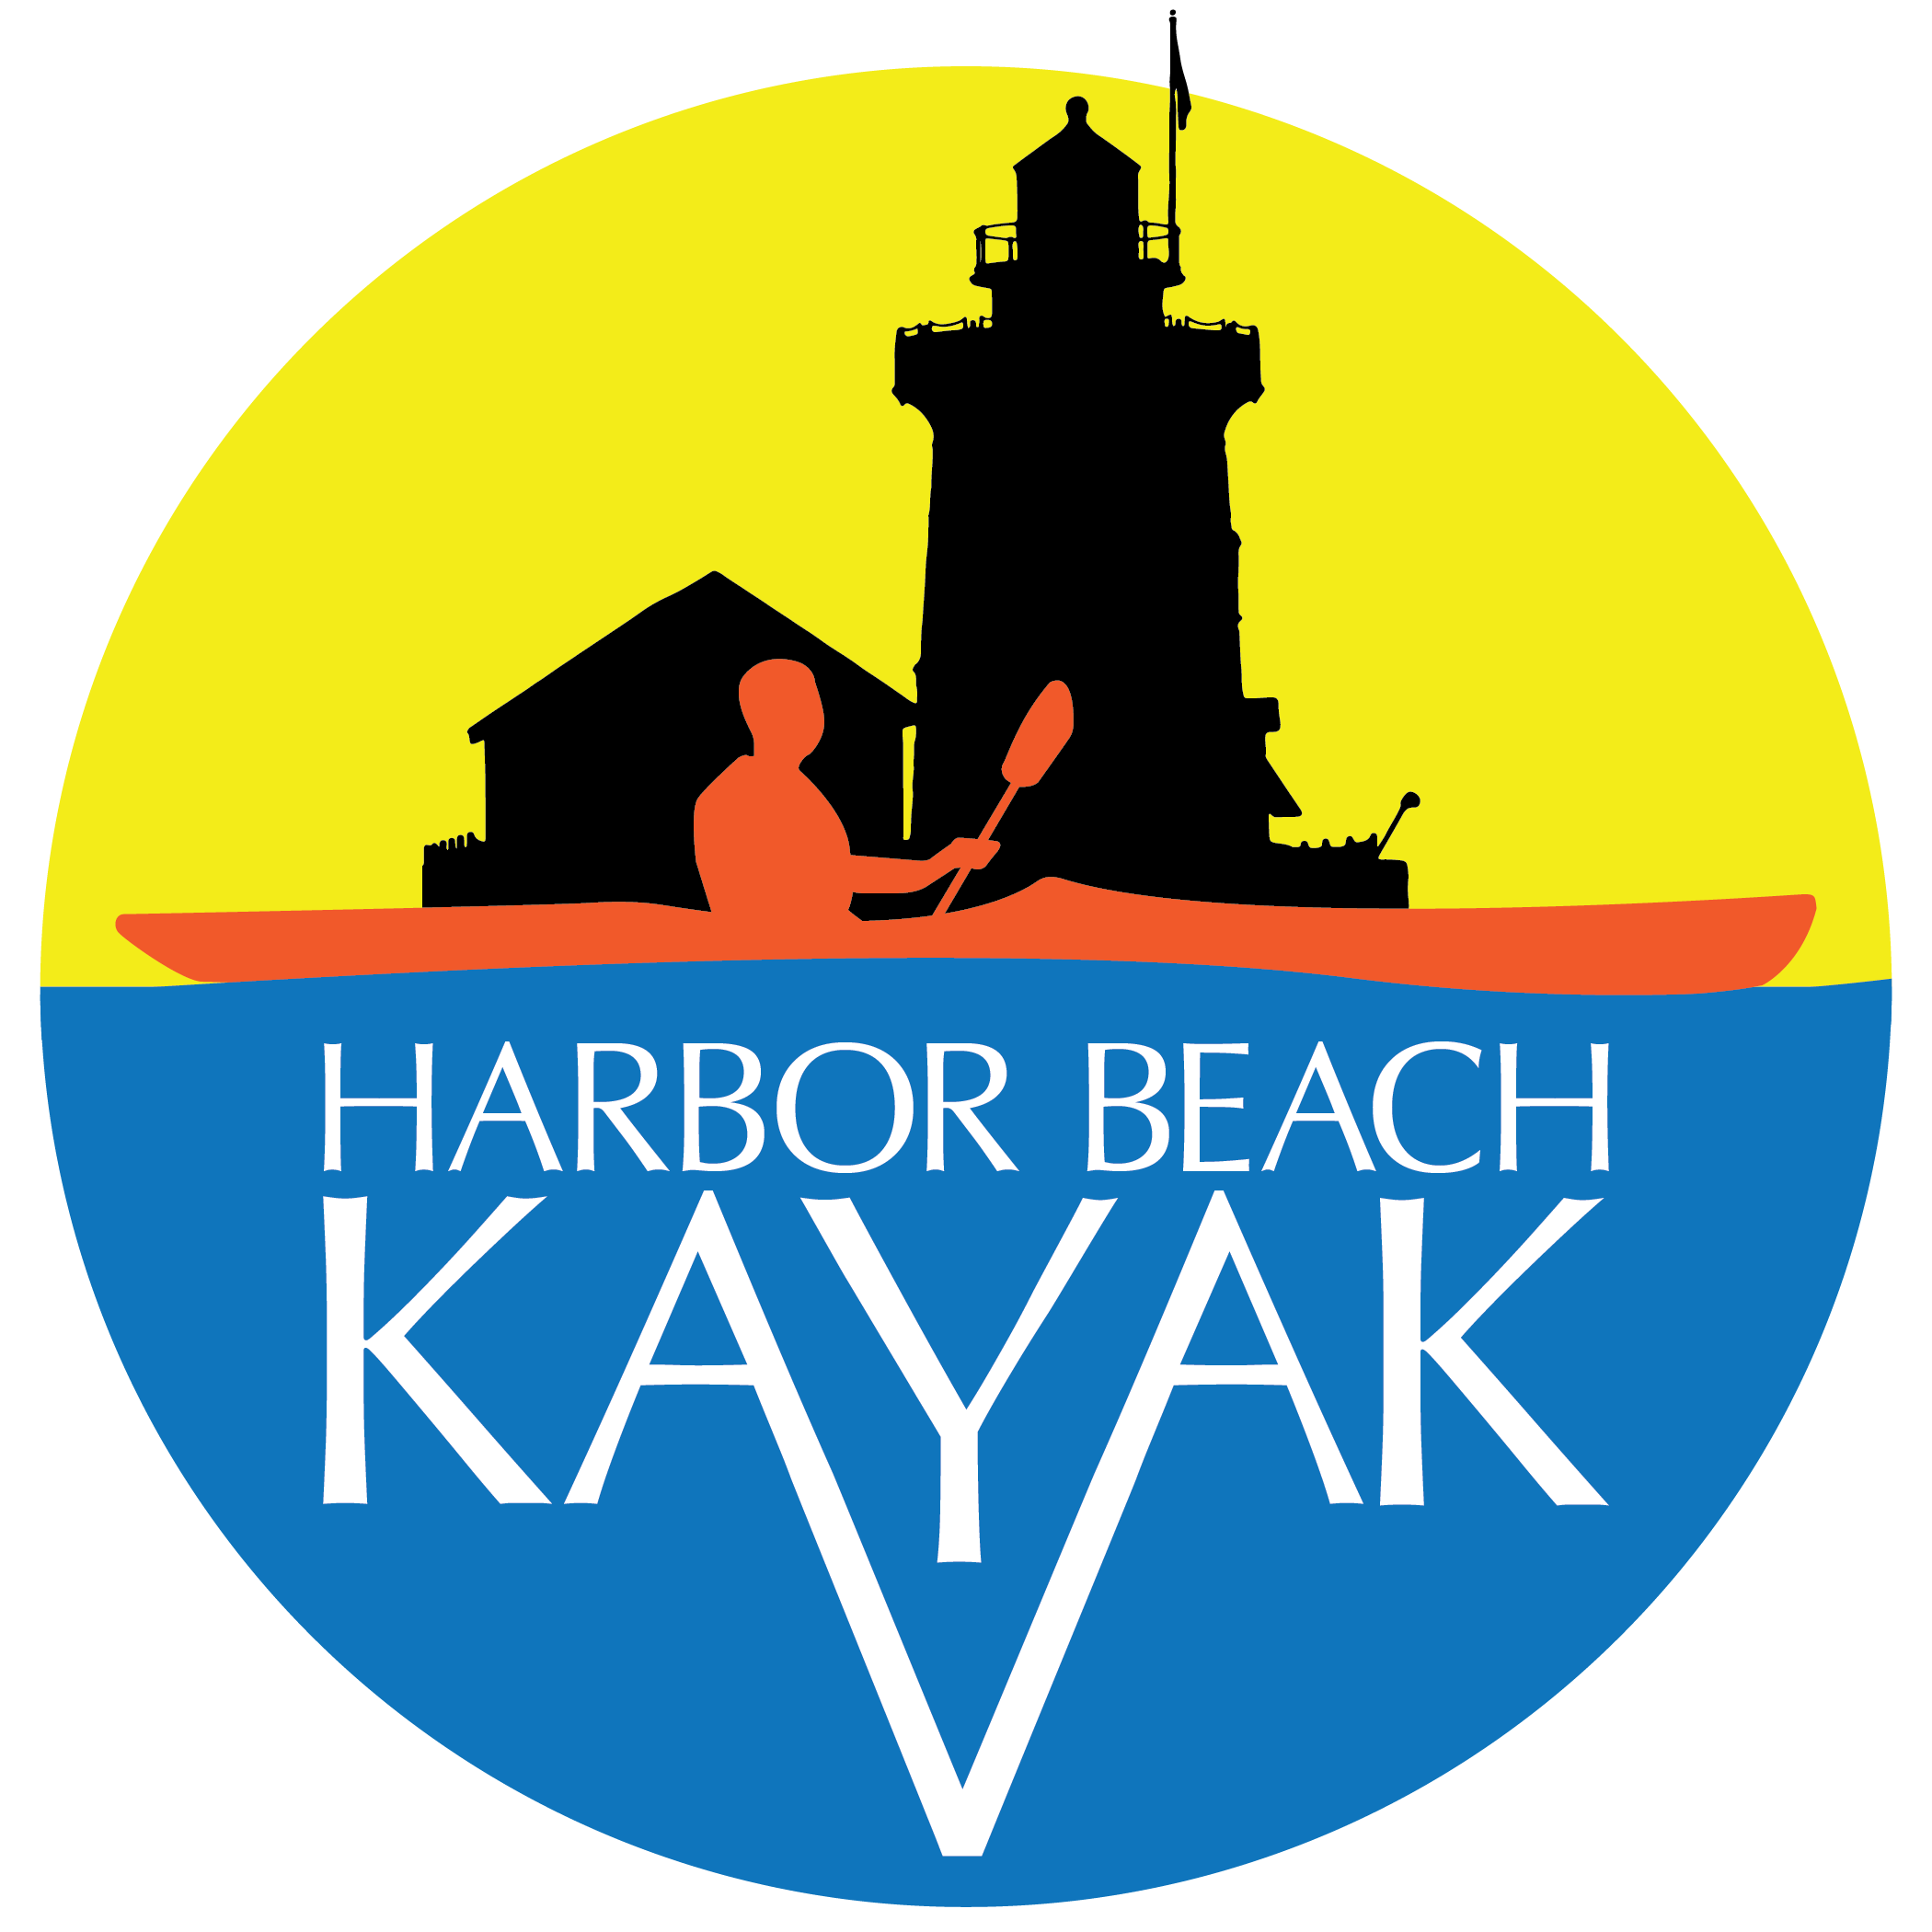 Harbor Beach Kayak (Copy) (Copy) (Copy) (Copy)